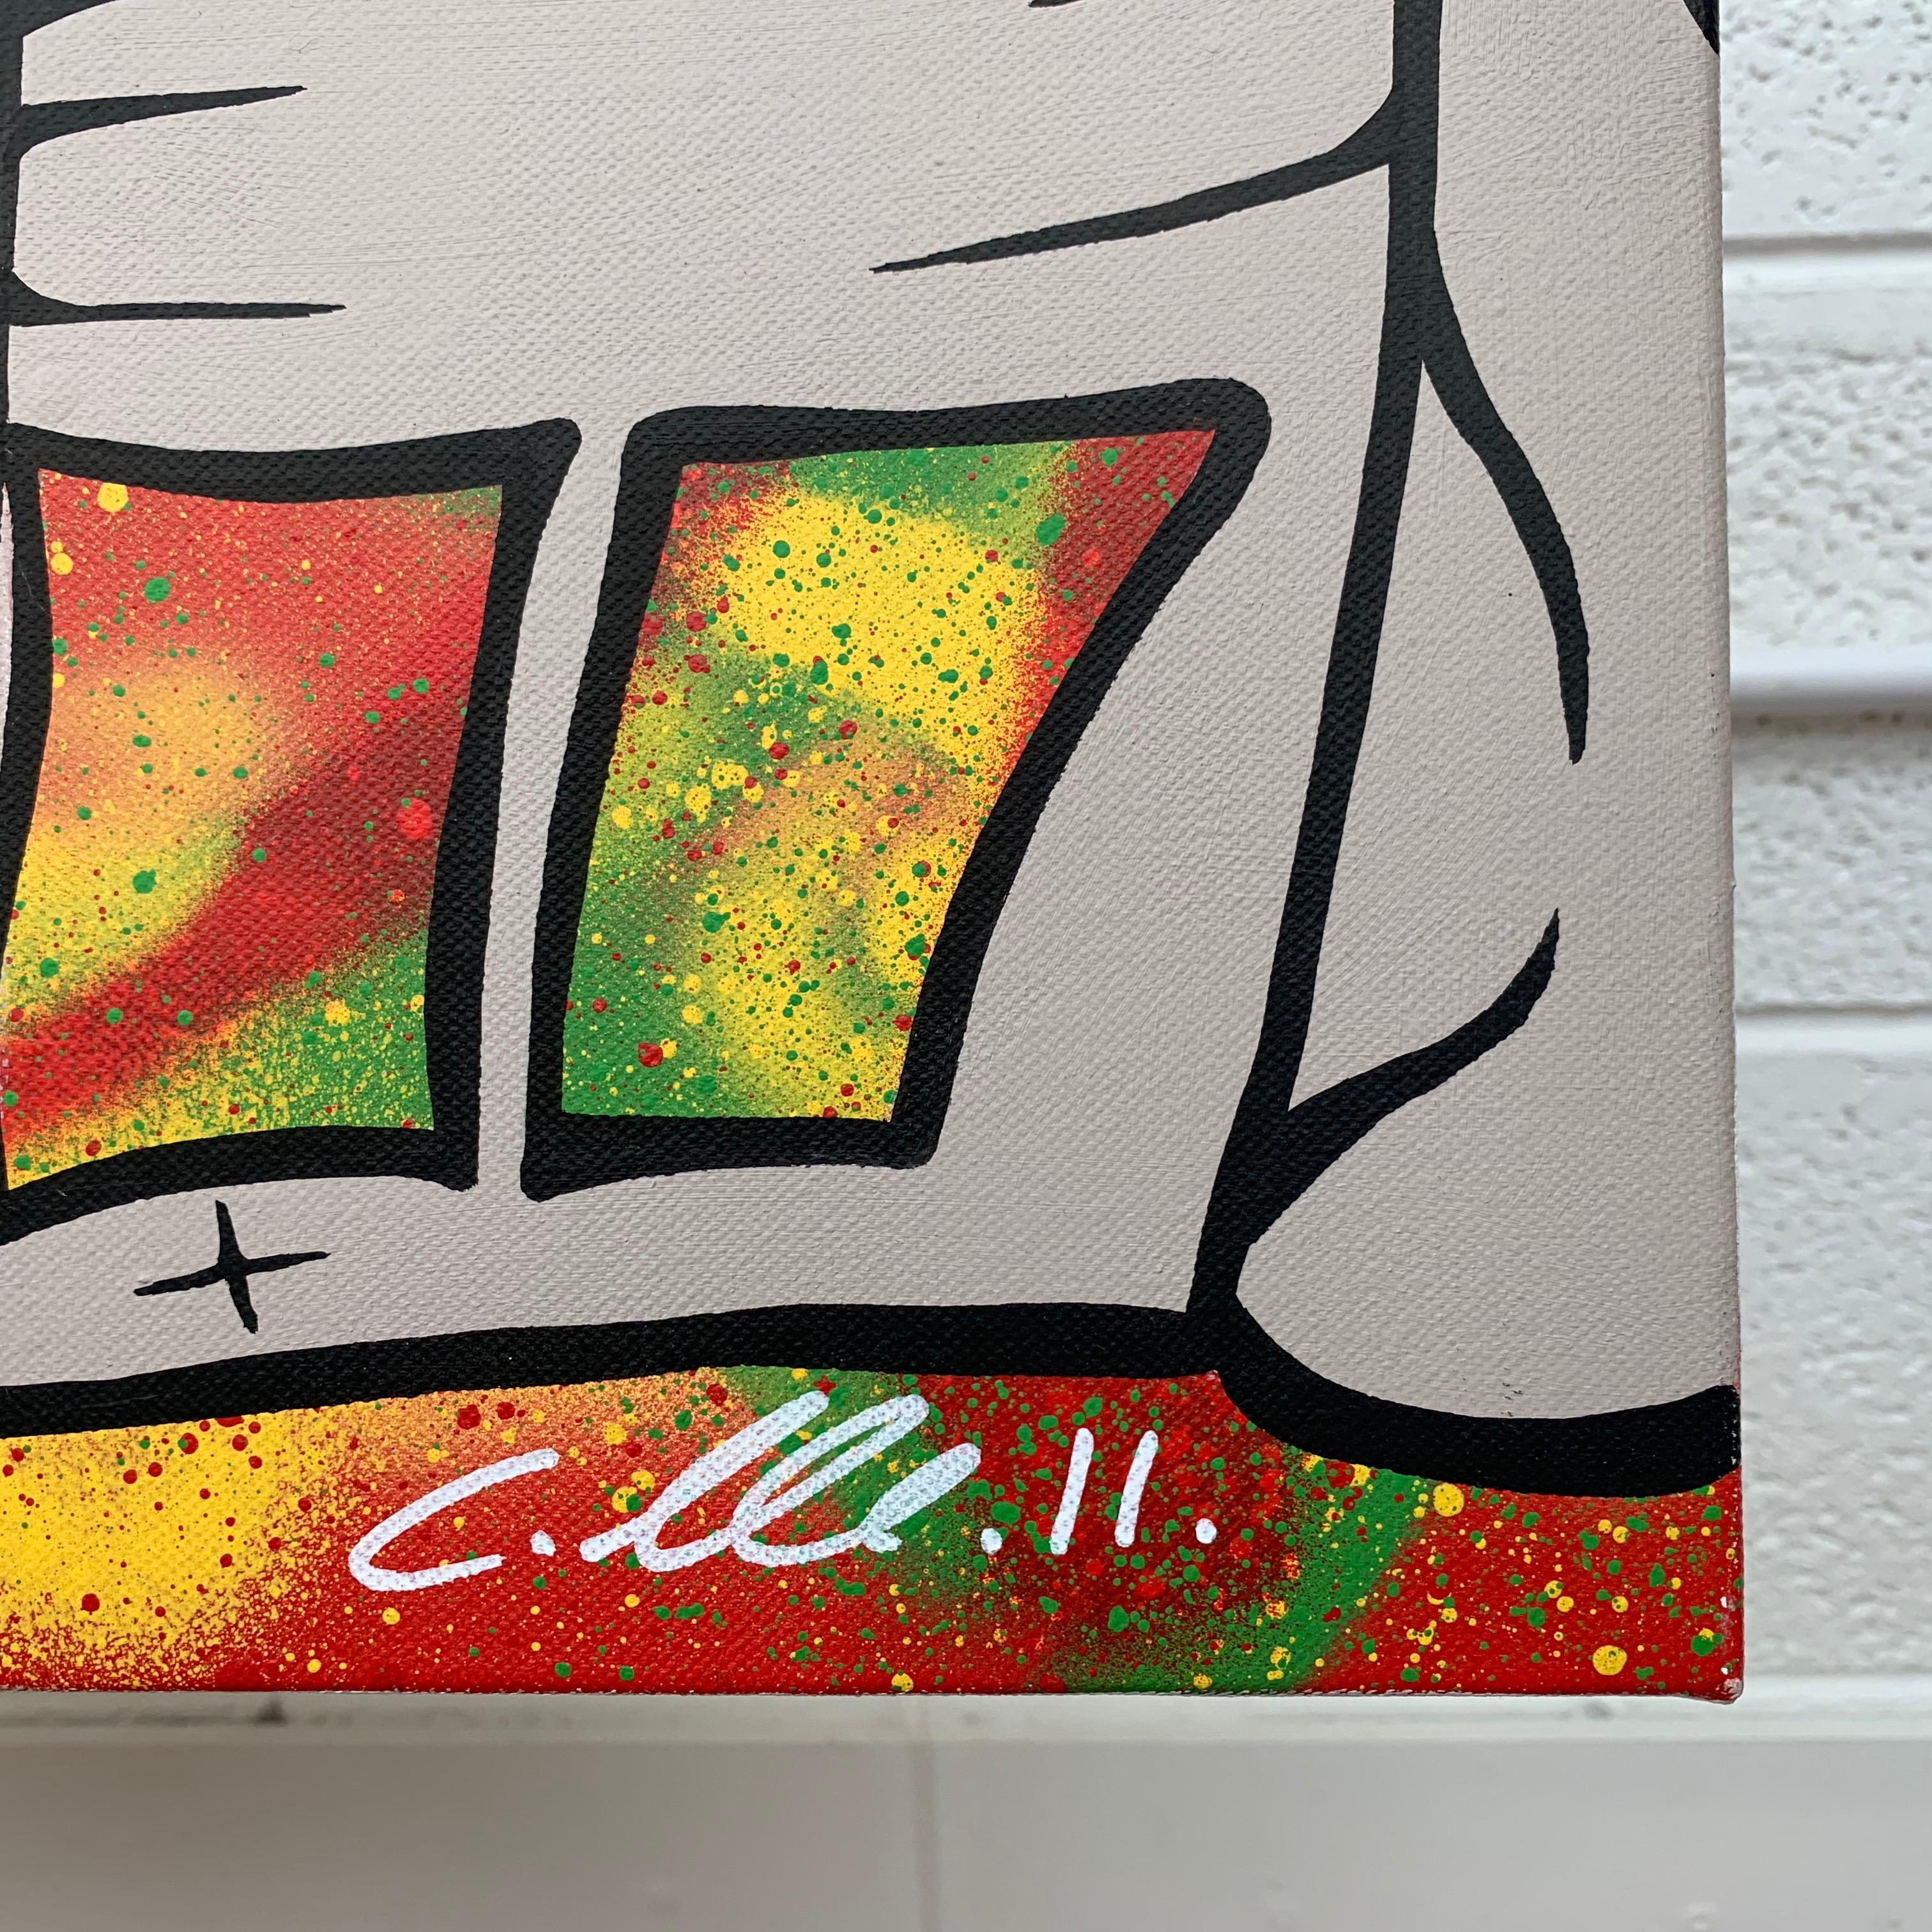  Silberne Straße mit abstraktem Hintergrund Pop Art des britischen Urban Graffiti Künstlers Chris Pegg. Chris Pegg ist ein autodidaktischer Street Artist, der Kunstwerke mit einem starken sozialen Kommentar produziert.  Seine Arbeiten sind von